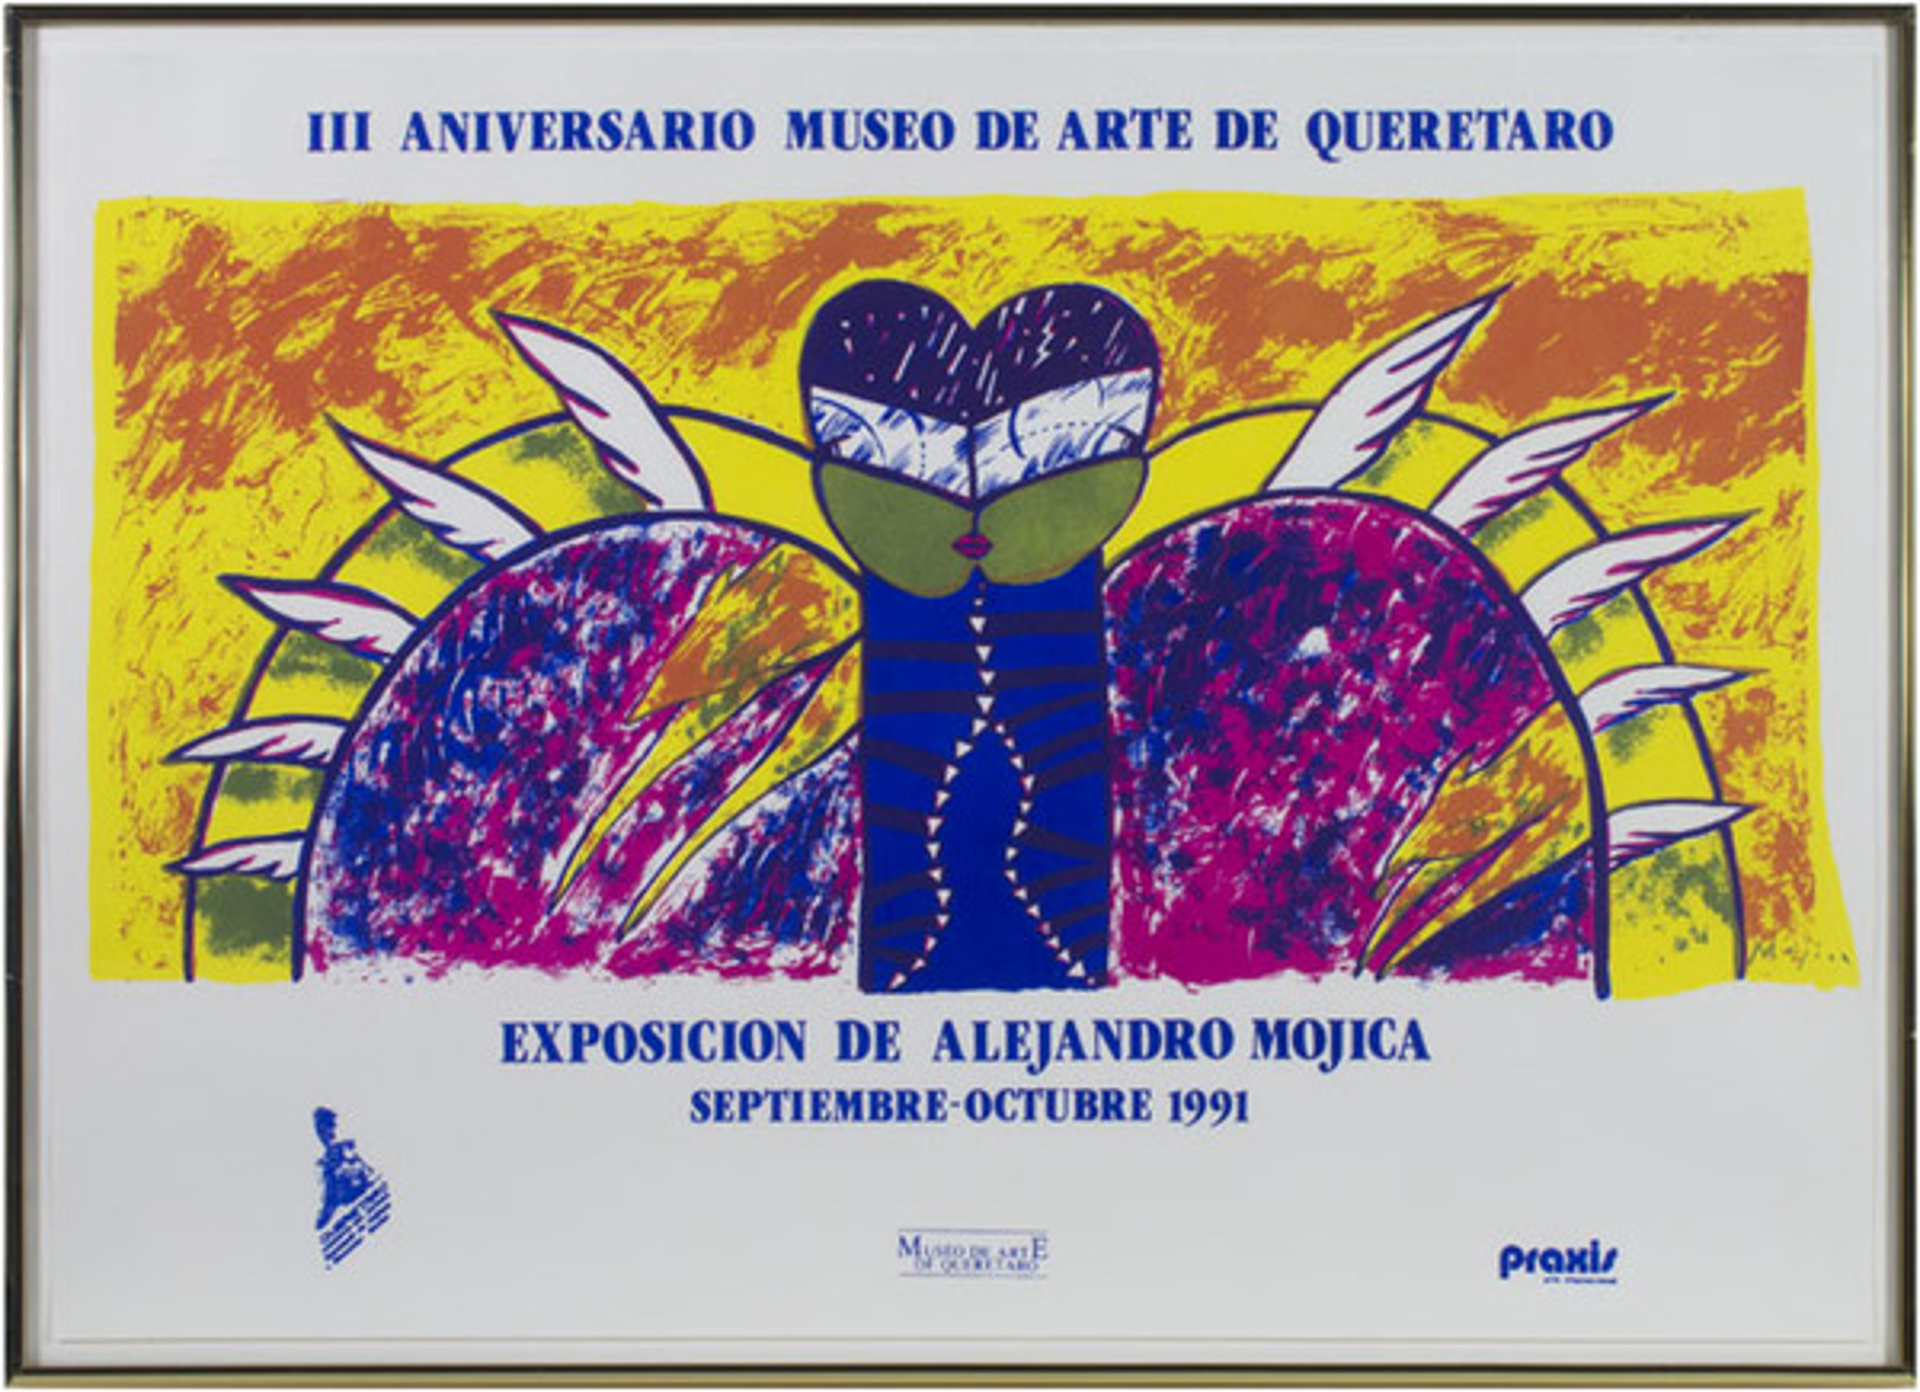 Exposicion de Alejandro Mojica by Alejandro Mojica